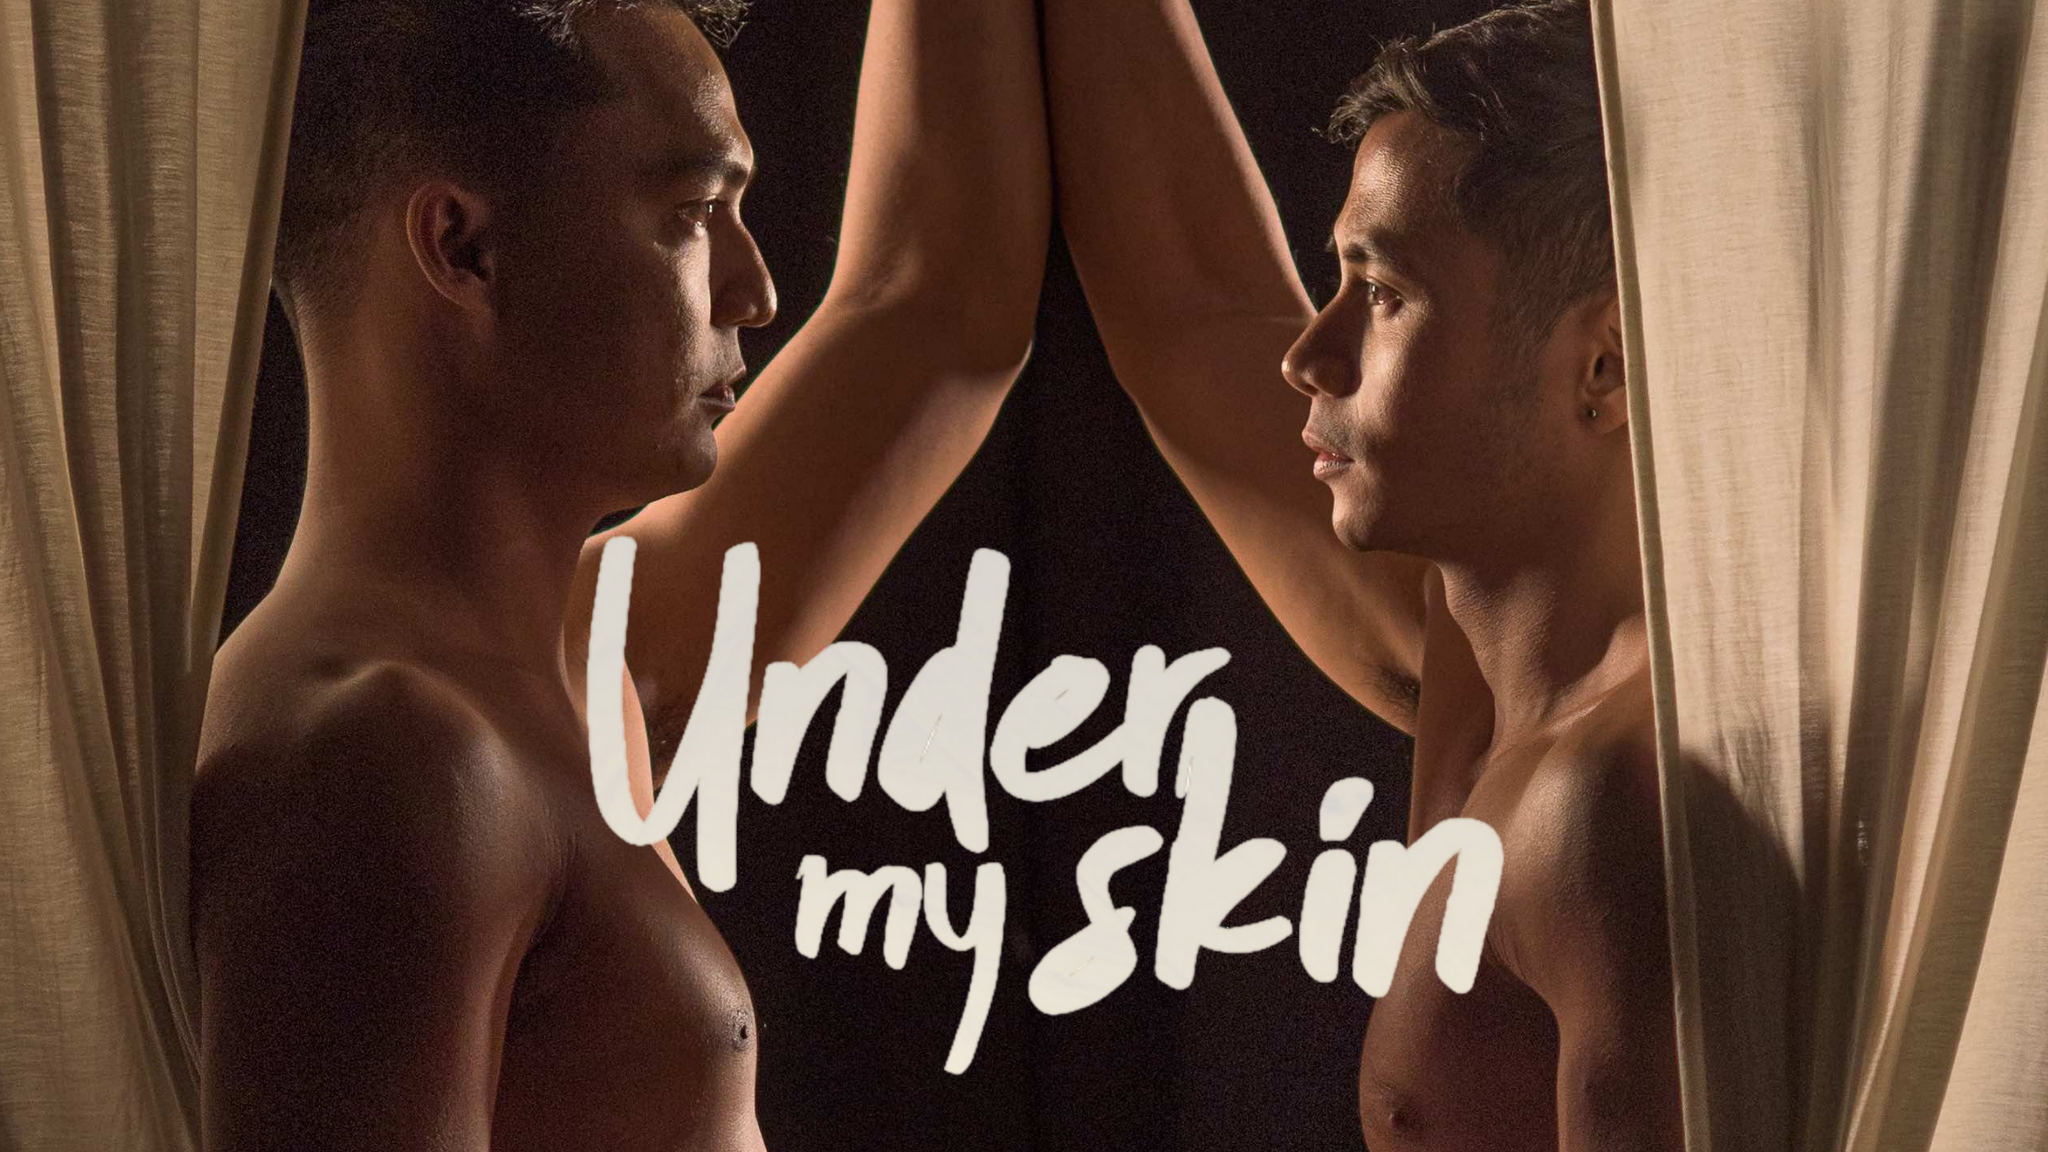 PETA’s ‘Under My Skin’ to Stream Online